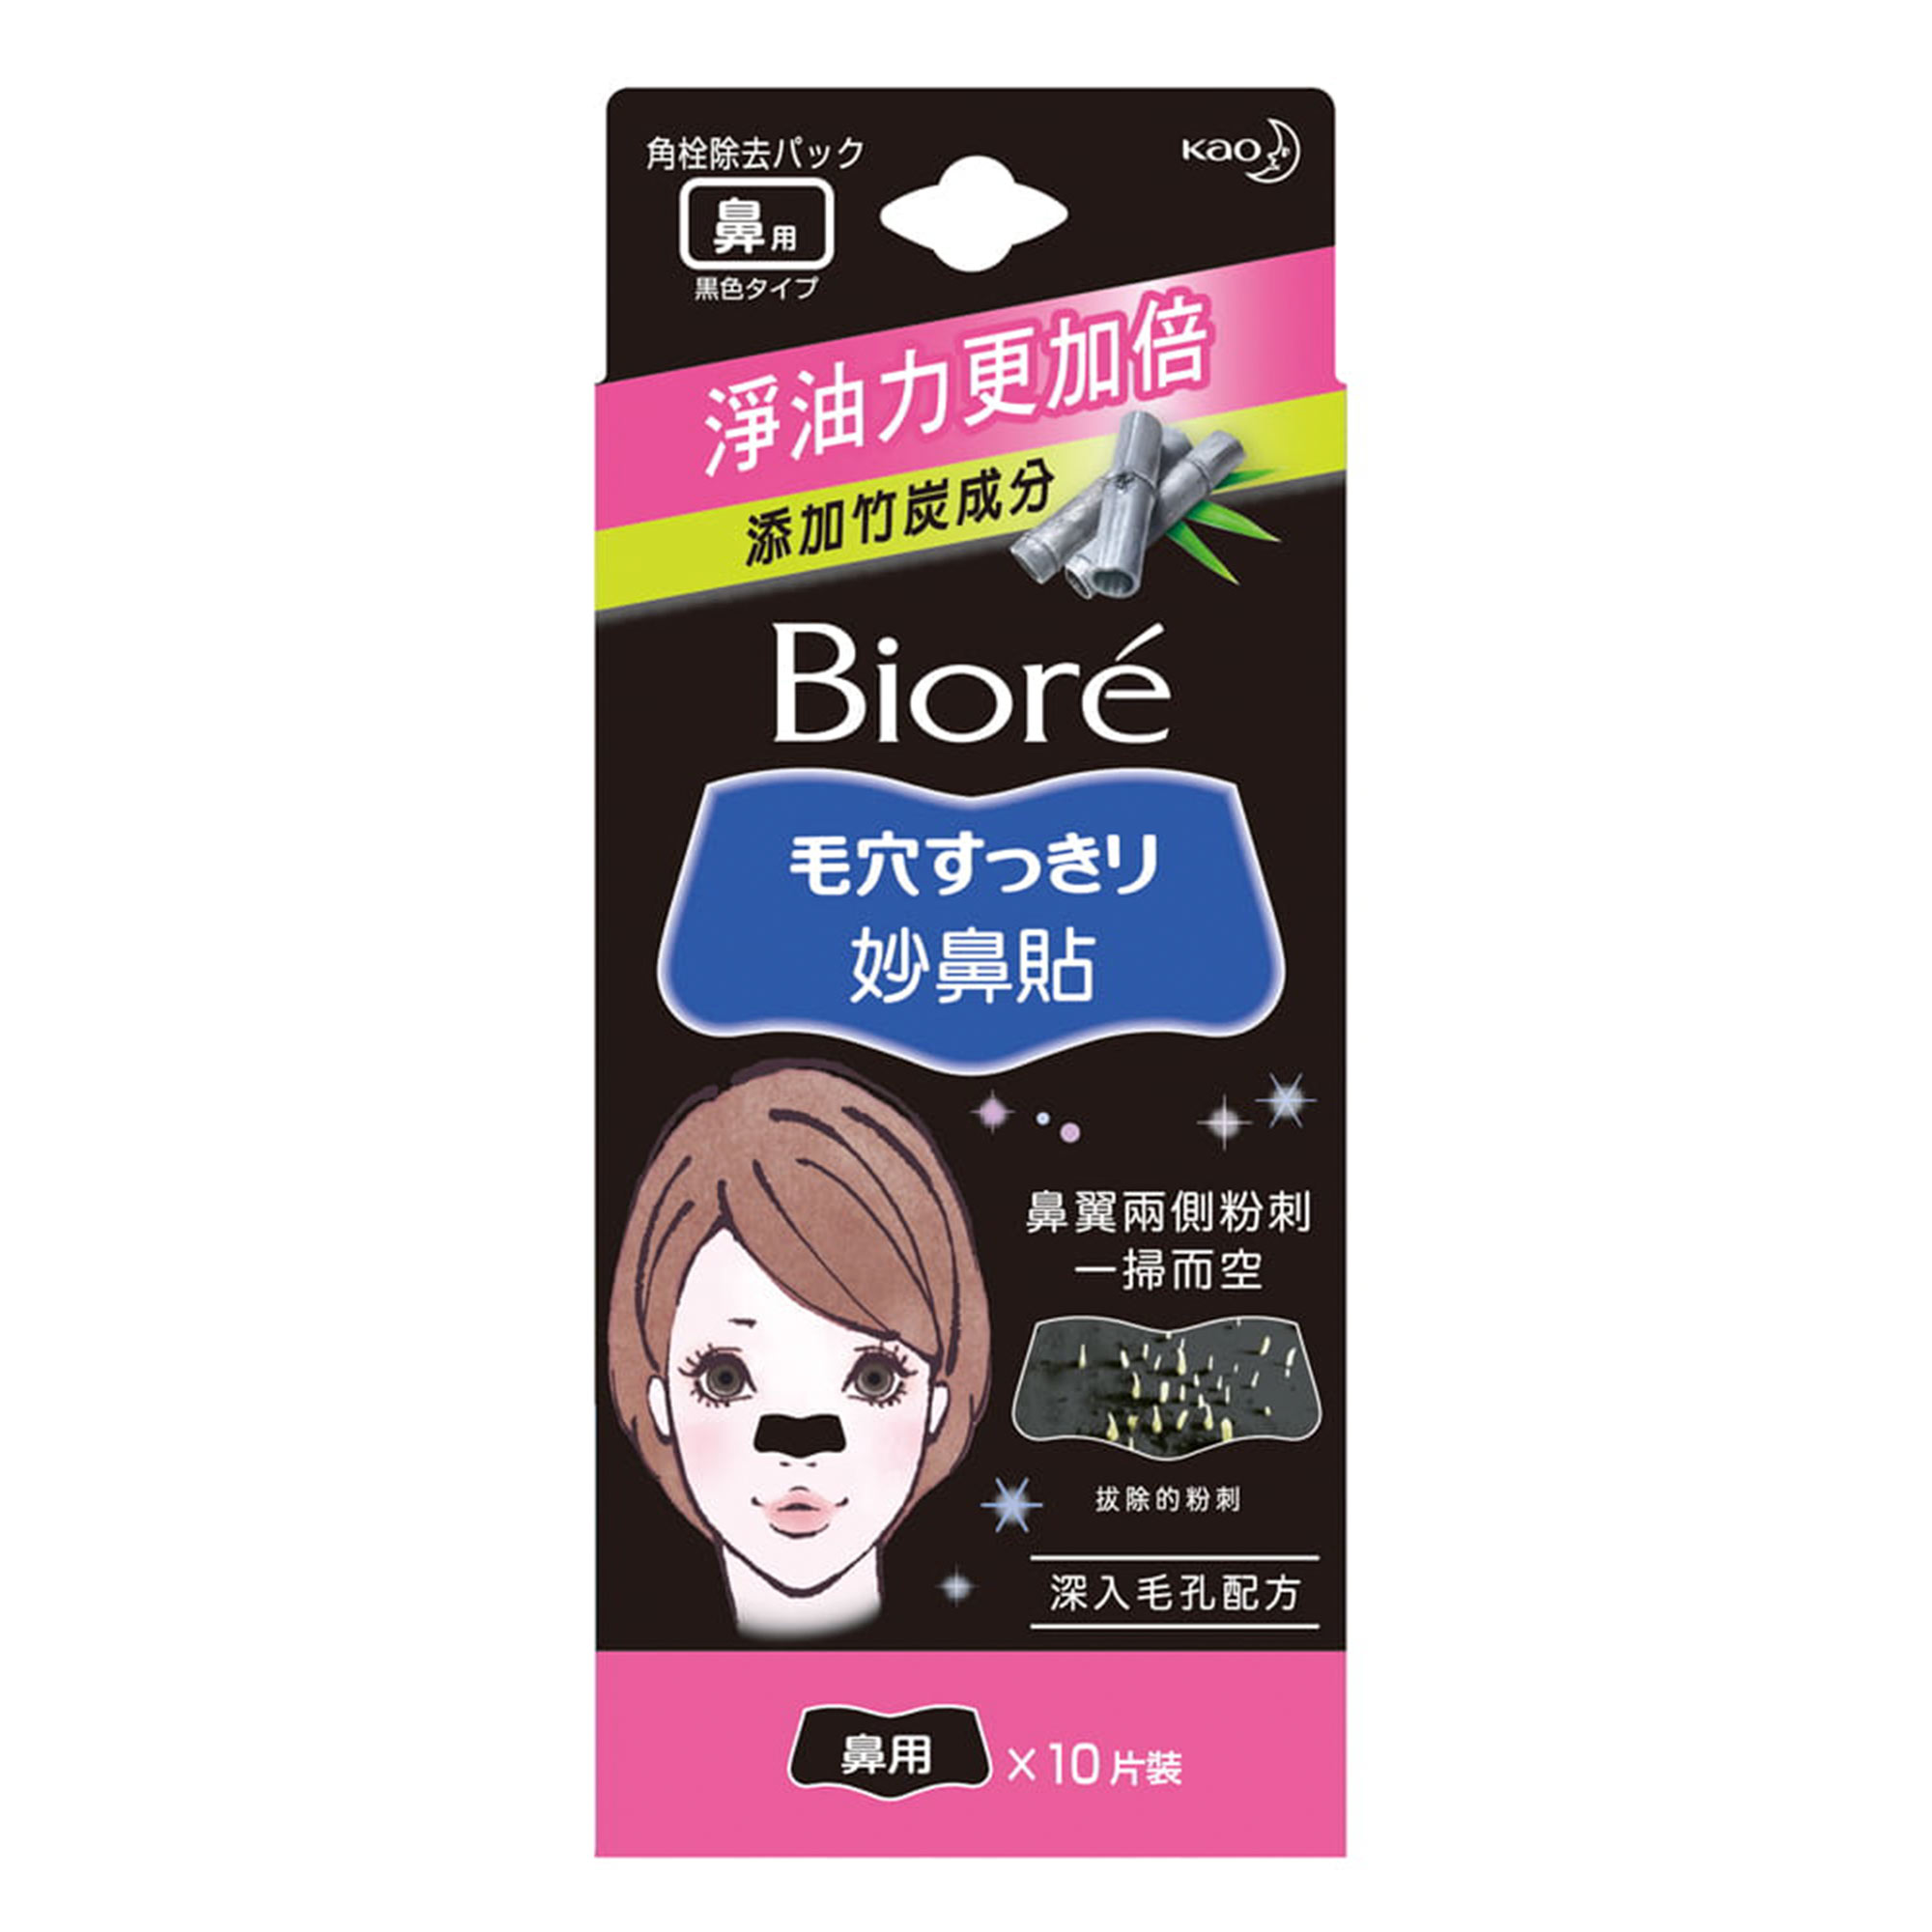 Очищающие полоски для носа Biore  с бамбуковым углем 10 шт пирсинг в крыло носа